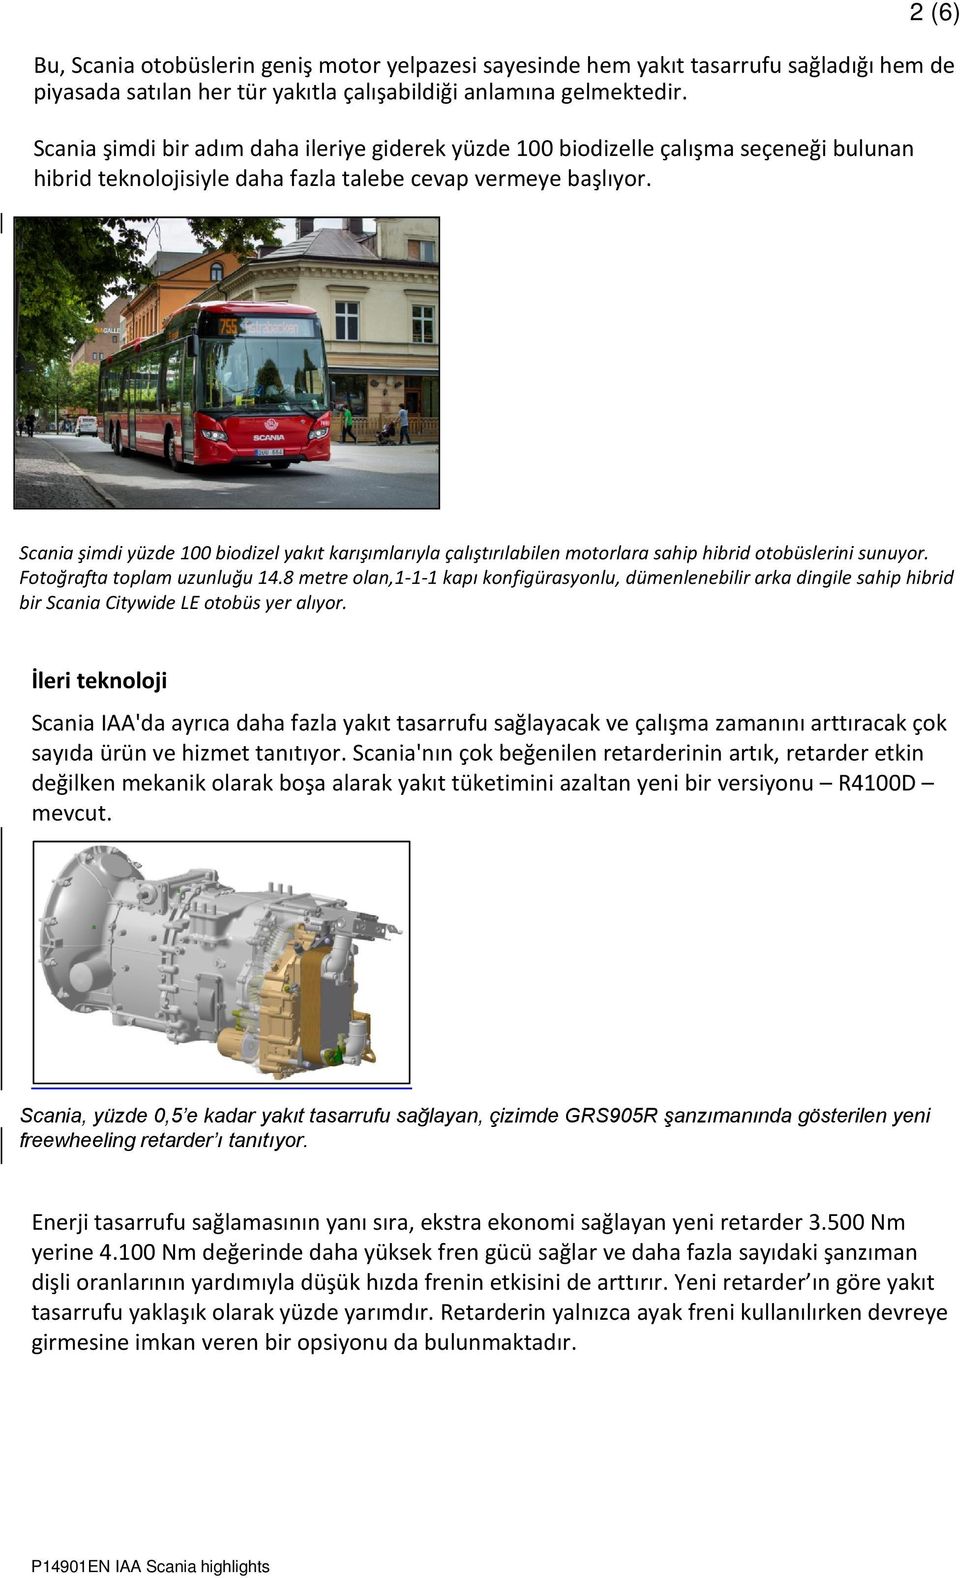 Scania şimdi yüzde 100 biodizel yakıt karışımlarıyla çalıştırılabilen motorlara sahip hibrid otobüslerini sunuyor. Fotoğrafta toplam uzunluğu 14.